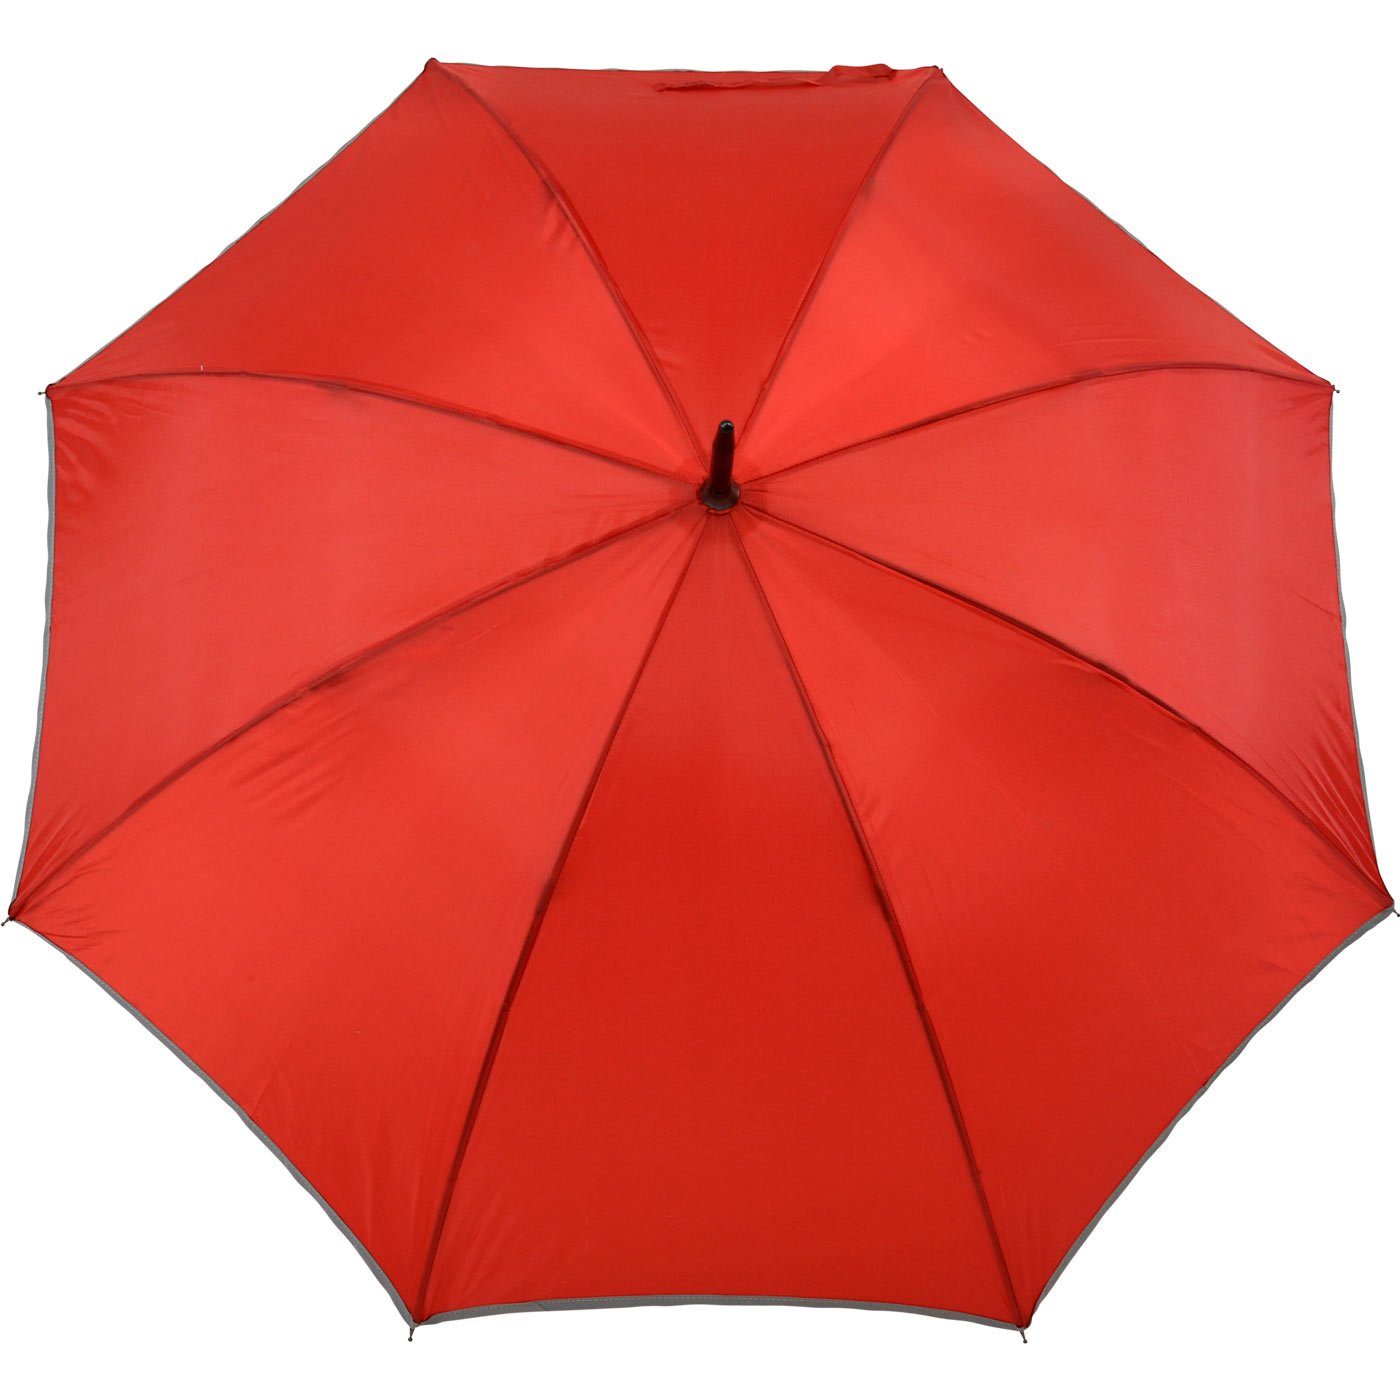 Stockregenschirm Falcone® reflektierende Impliva Fiberglas Sicherheitsschirm reflex Borte, Reflex leichter rot